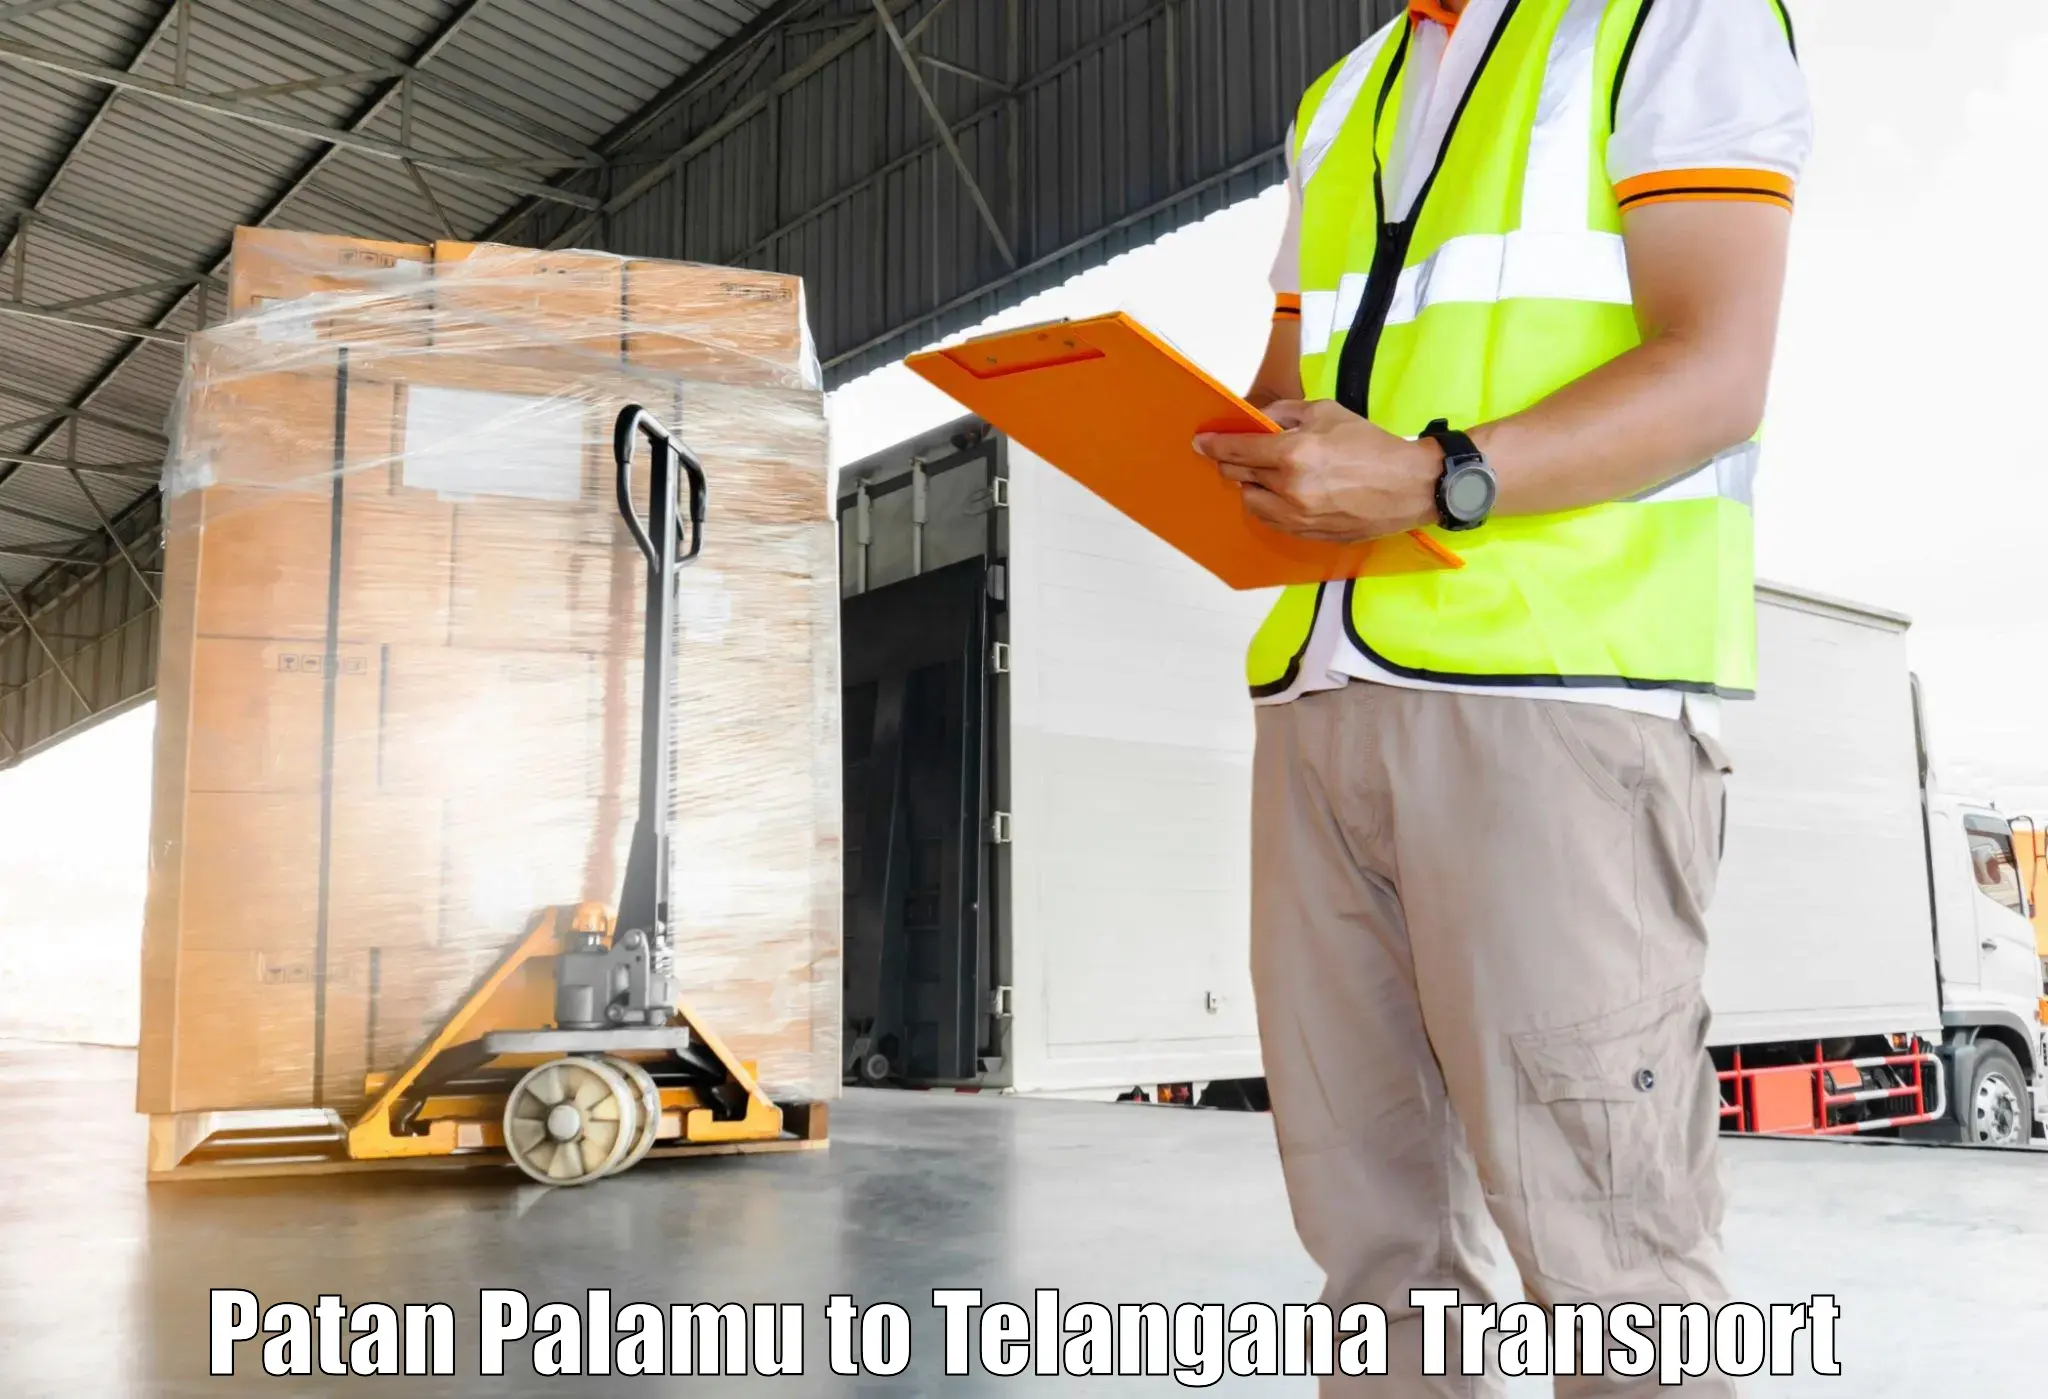 Inland transportation services Patan Palamu to Nellikuduru